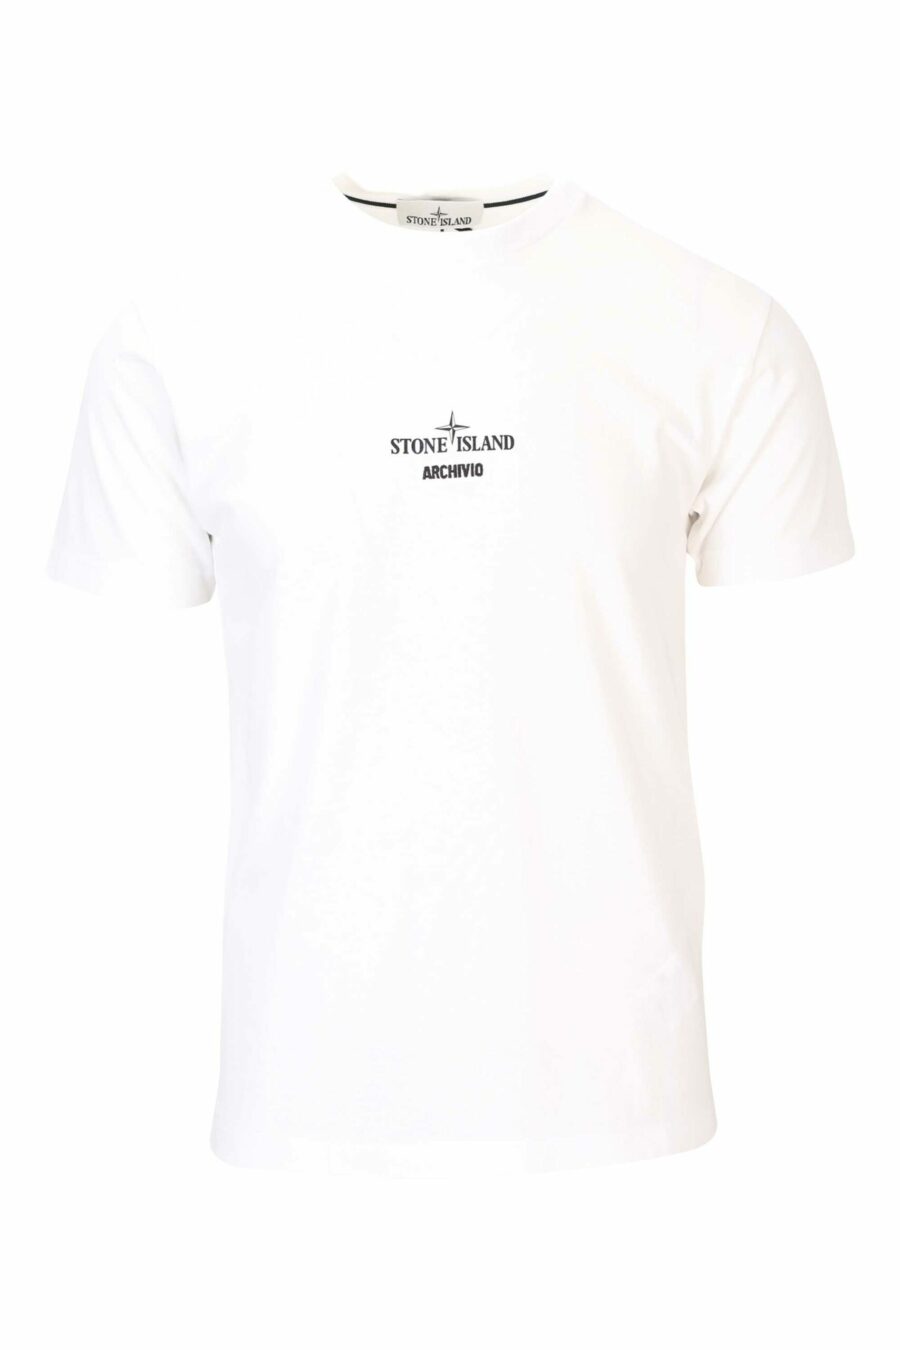 Weißes T-Shirt mit mittigem Logo und Druck auf dem Rücken - 8052572755866 skaliert